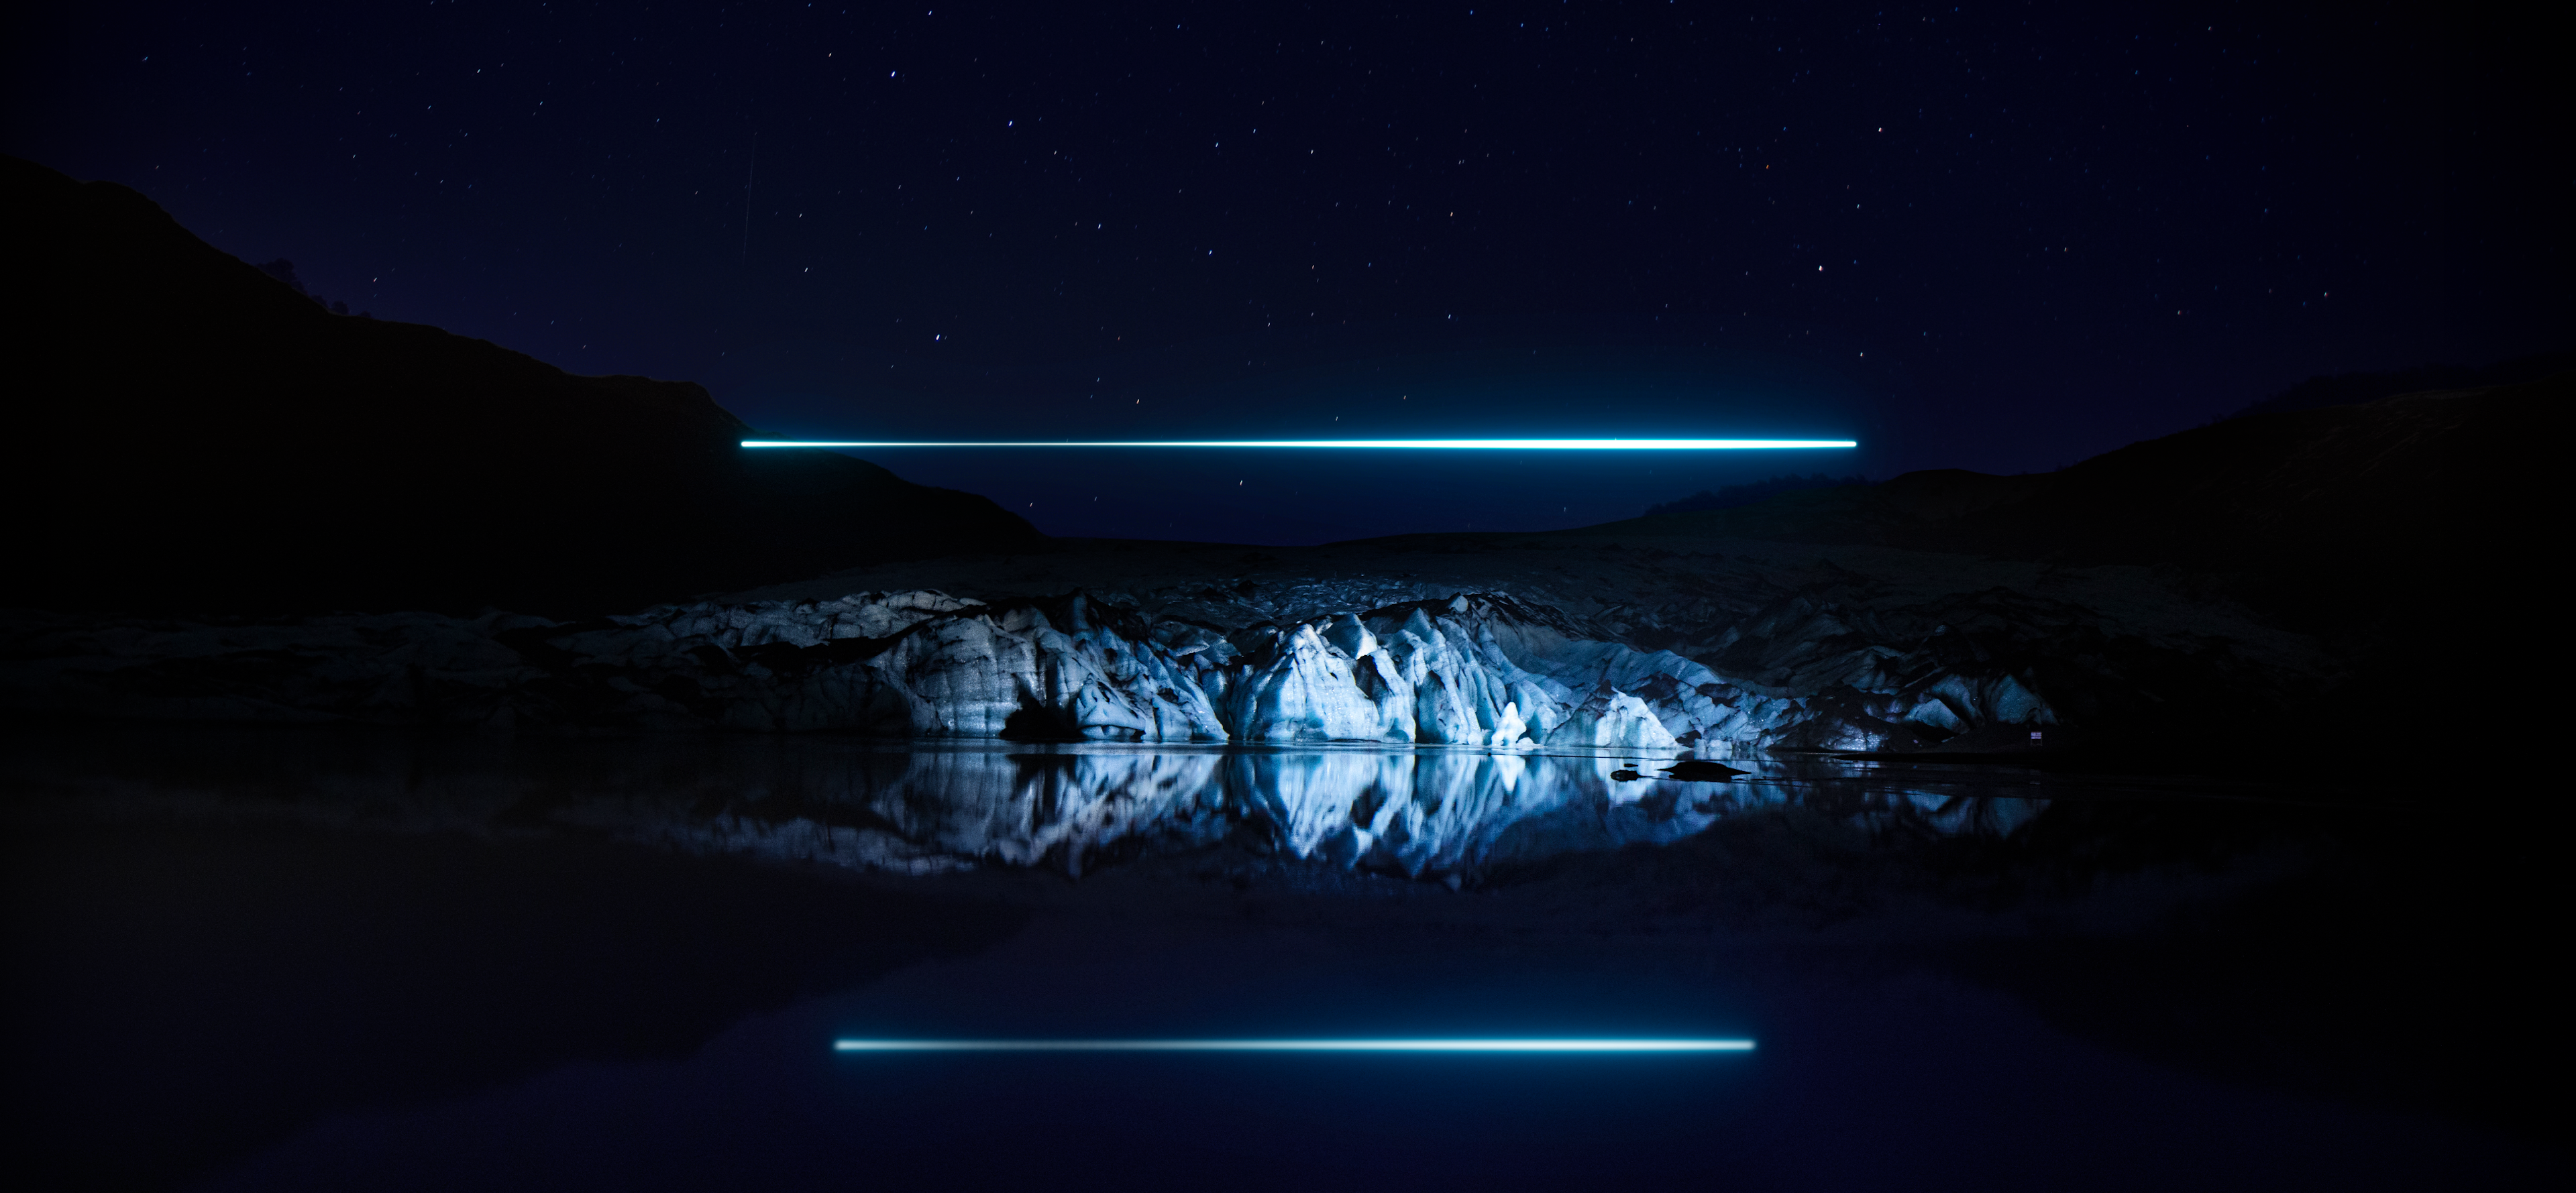 Noday - Sólheimajökull illuminated by a drone at night